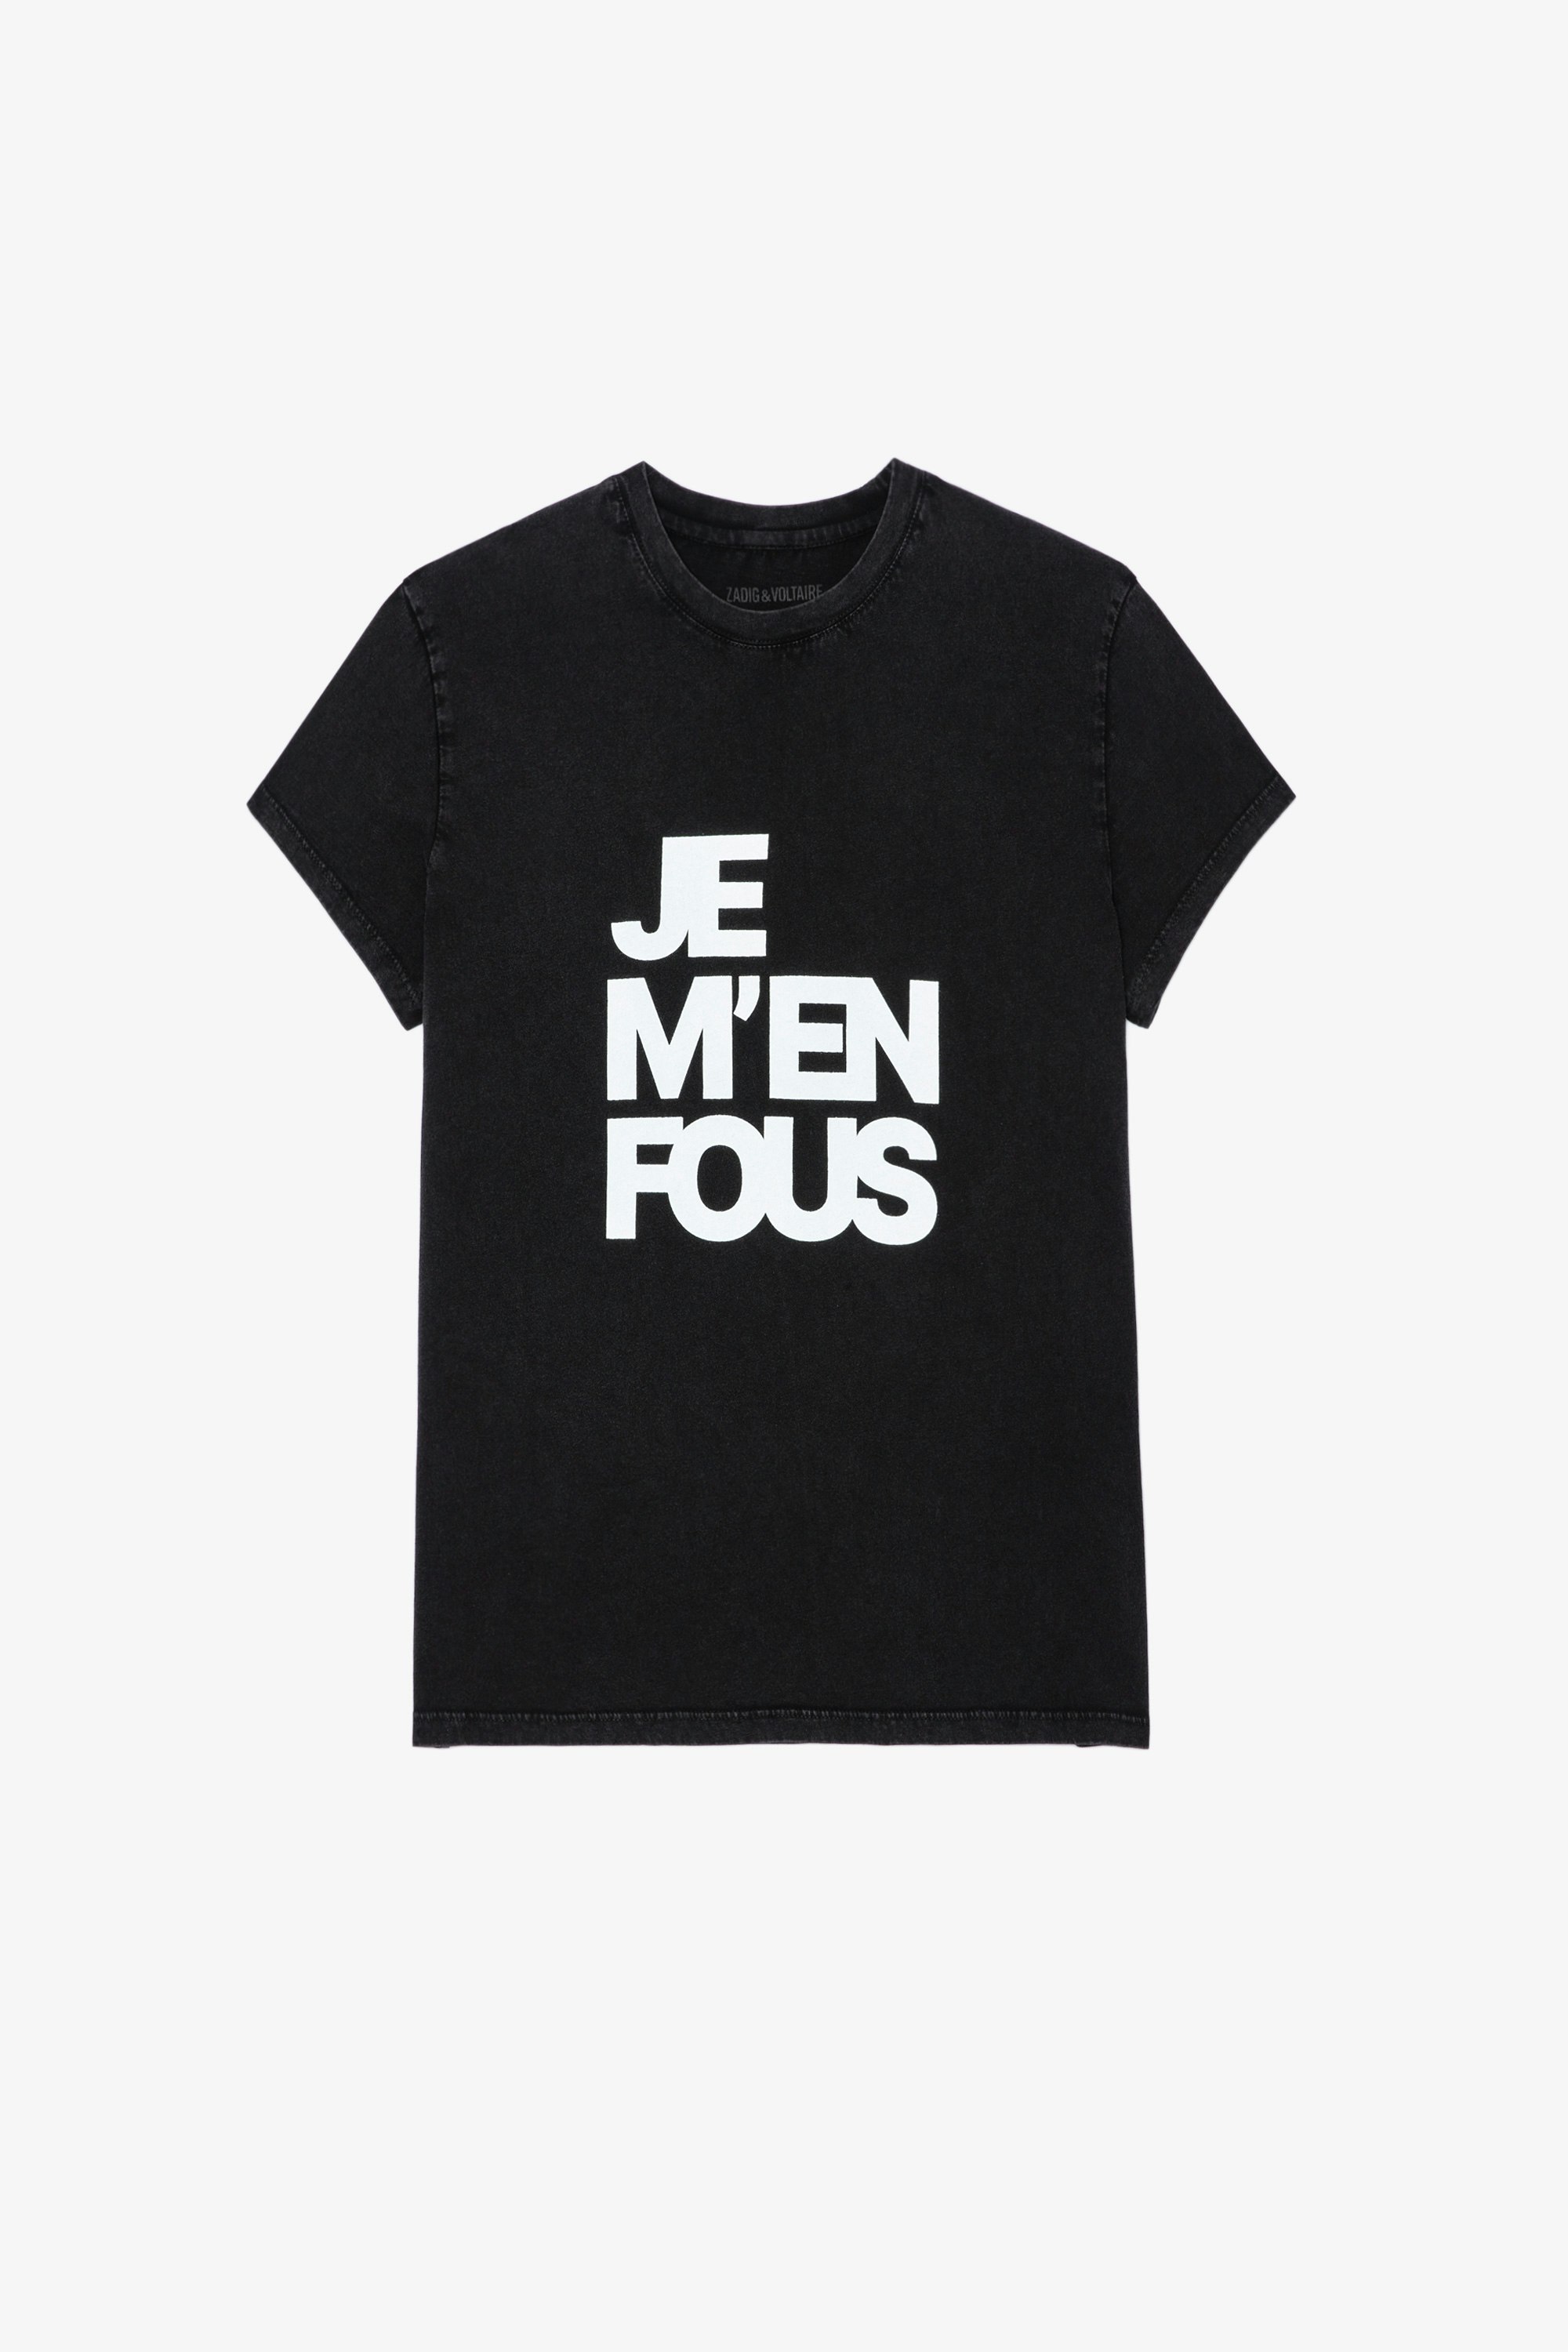 T-shirt Zoe T-shirt in cotone nero con scritta "Je m'en fous" donna